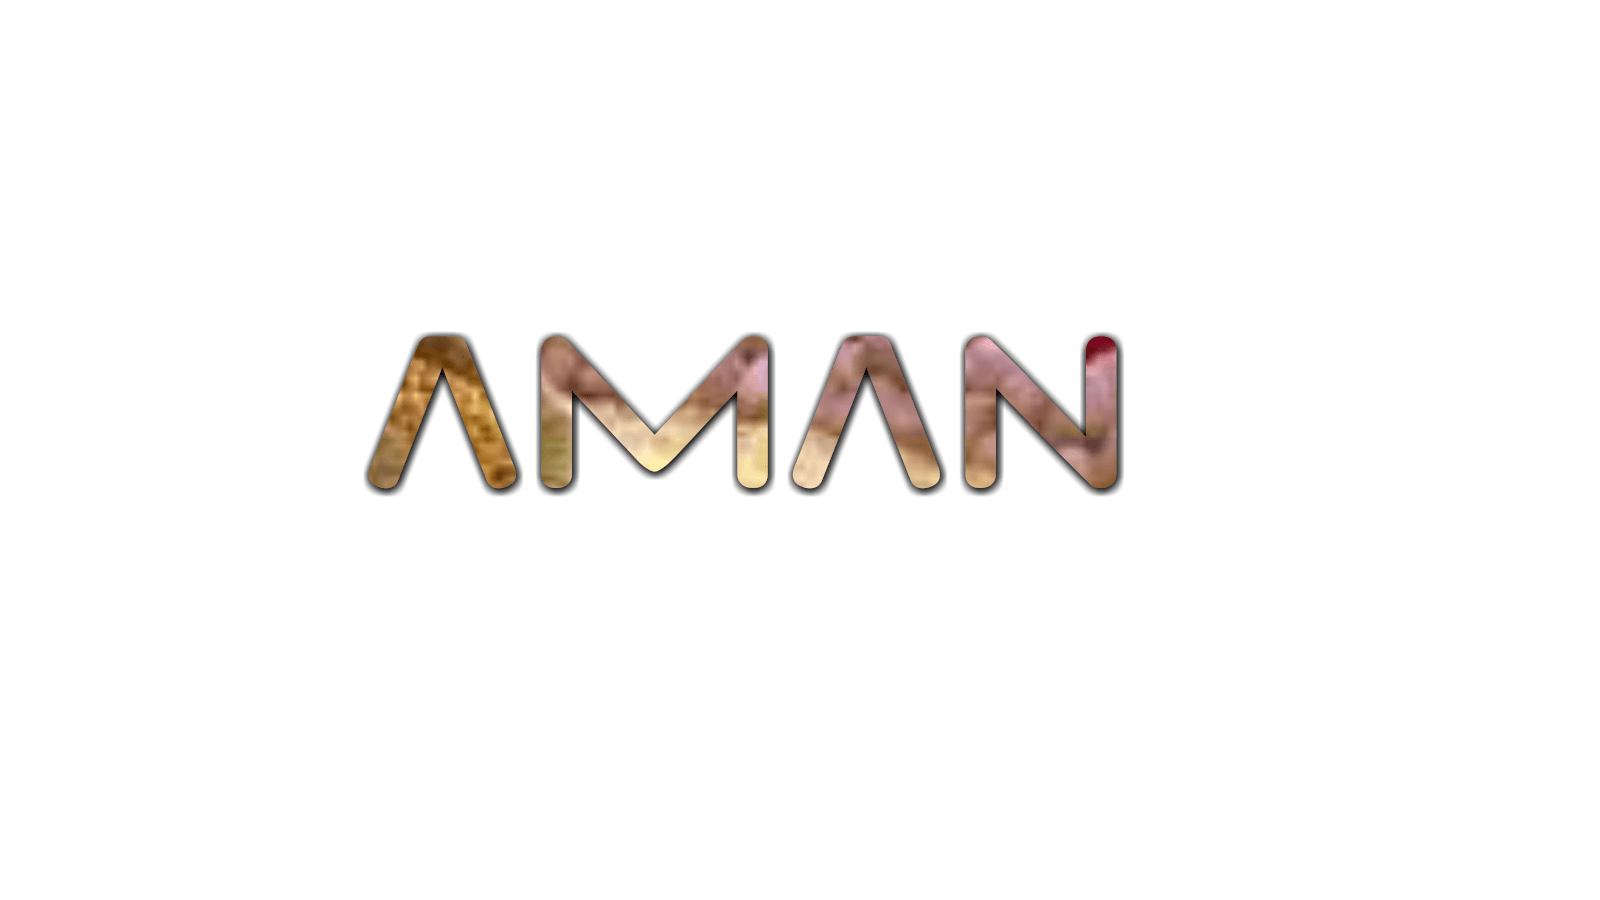 Aman Logo - Aman your logo